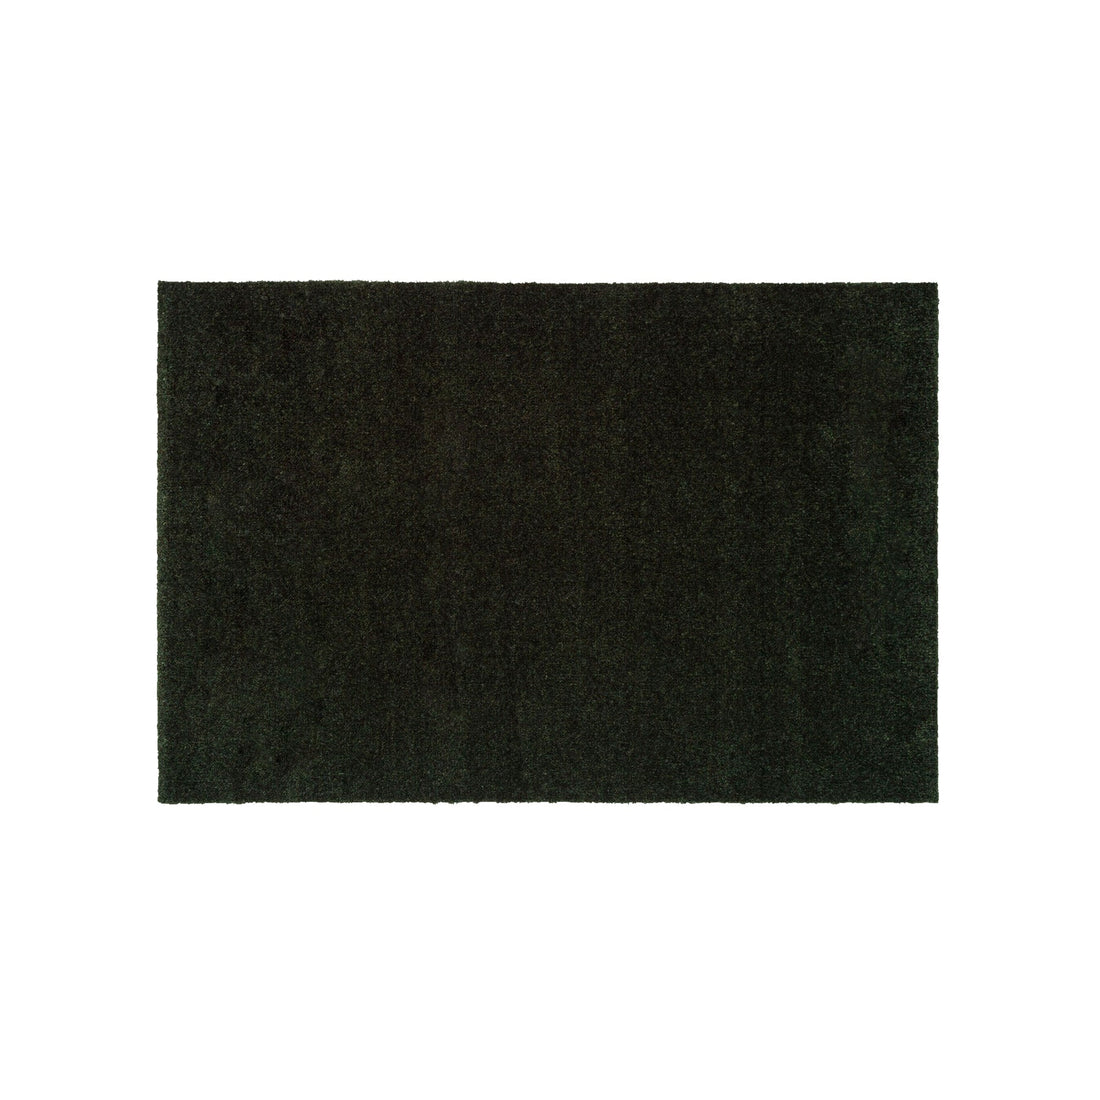 Mate de piso 40 x 60 cm - Cor de cor/verde escuro